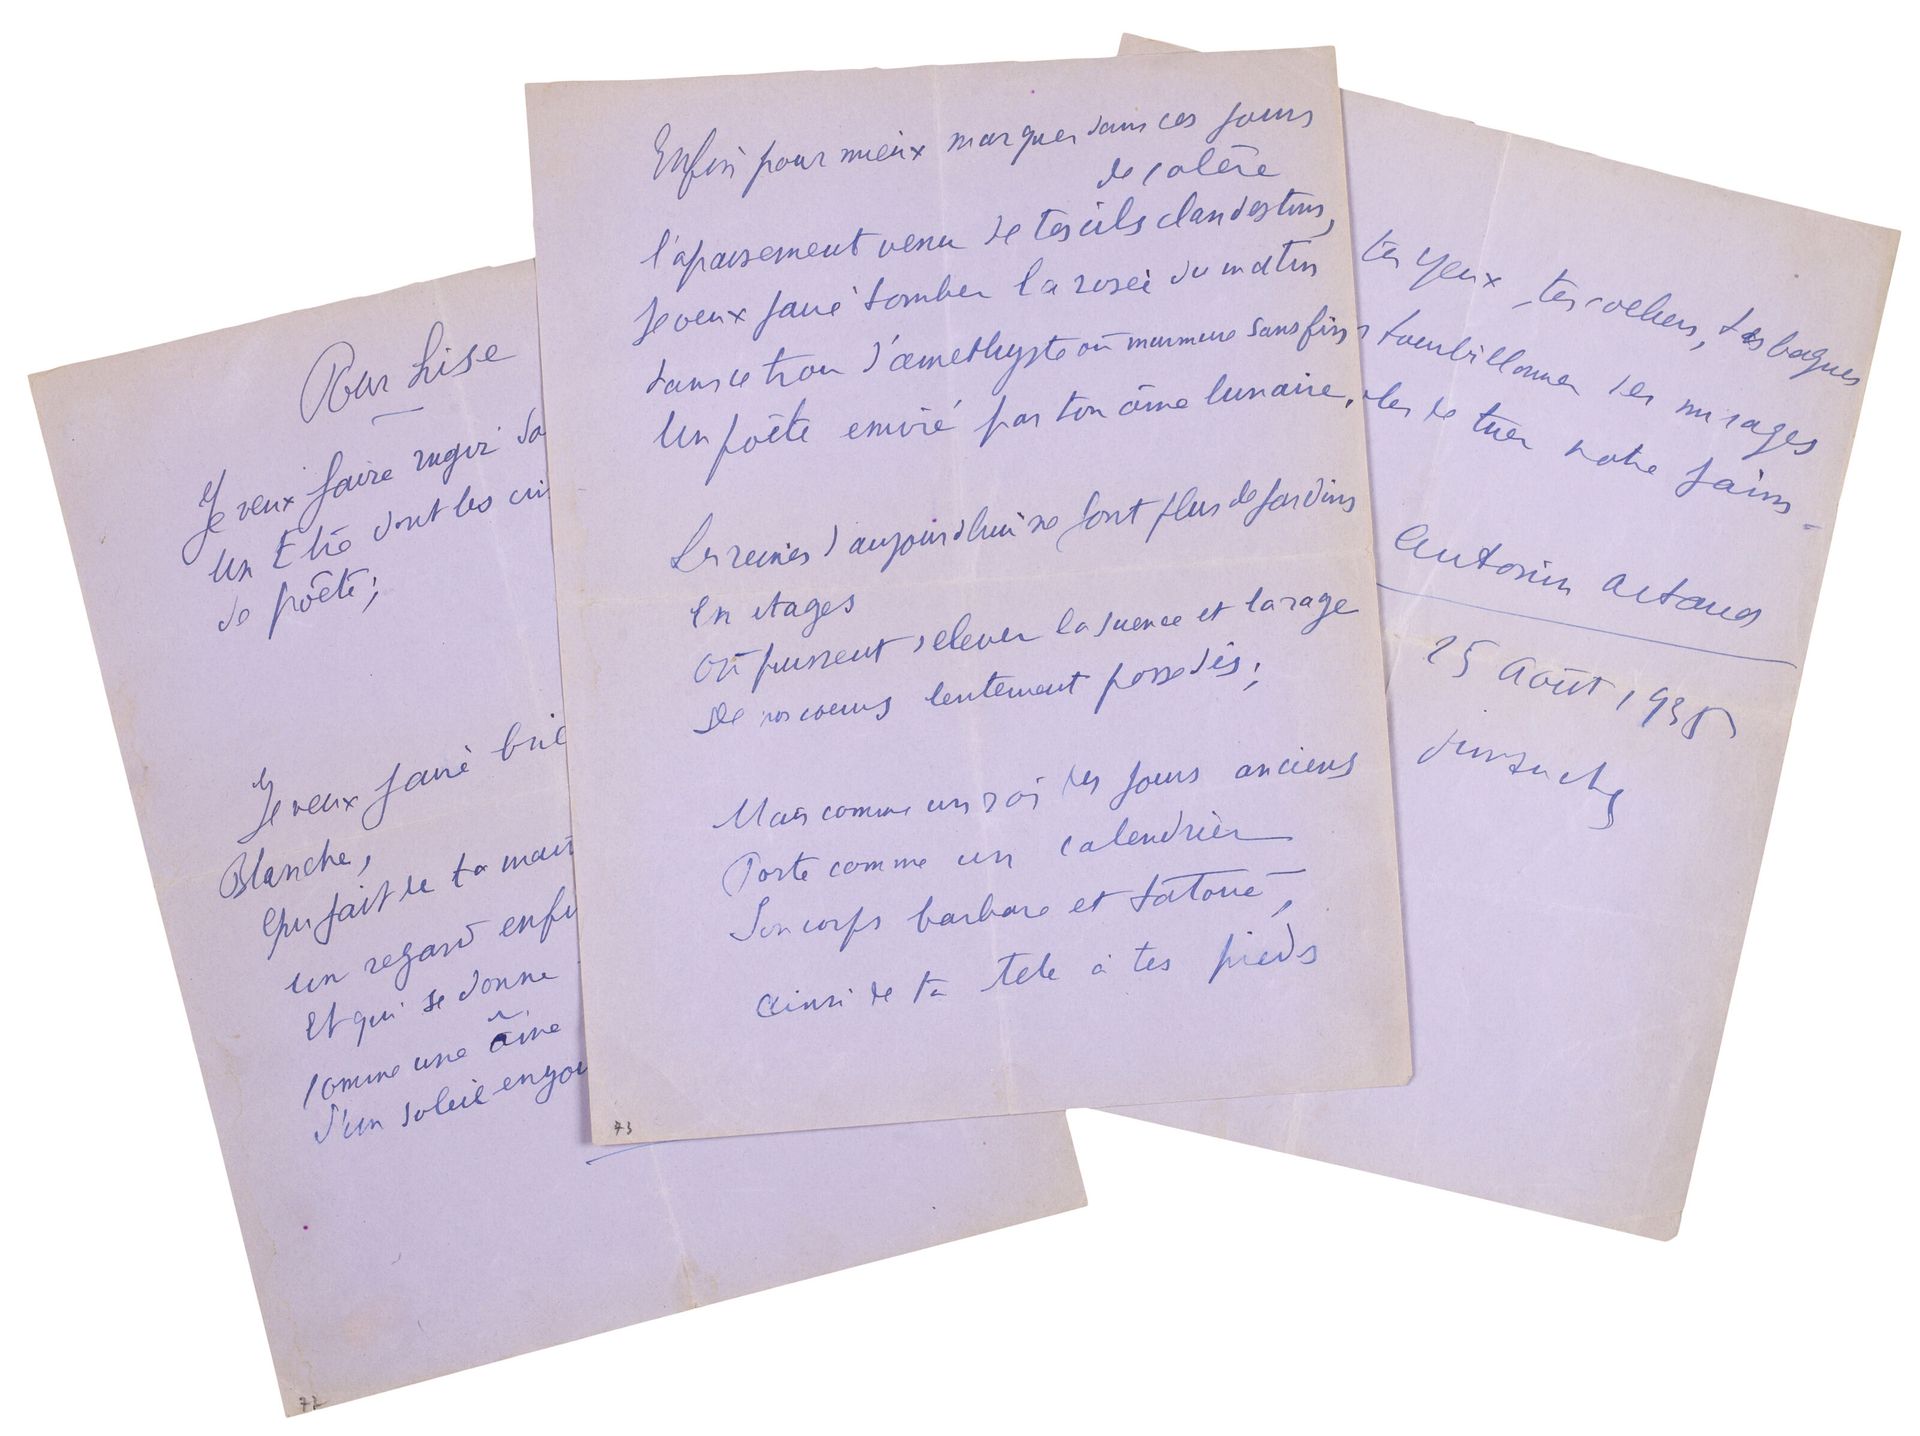 ARTAUD Antonin. 供阅读。签名的自传诗。1935年8月25日星期日。淡紫色牛皮纸蓝墨水3页4号。
，是一首赞美丽丝-德哈姆的极好的诗，风格惊人，相&hellip;